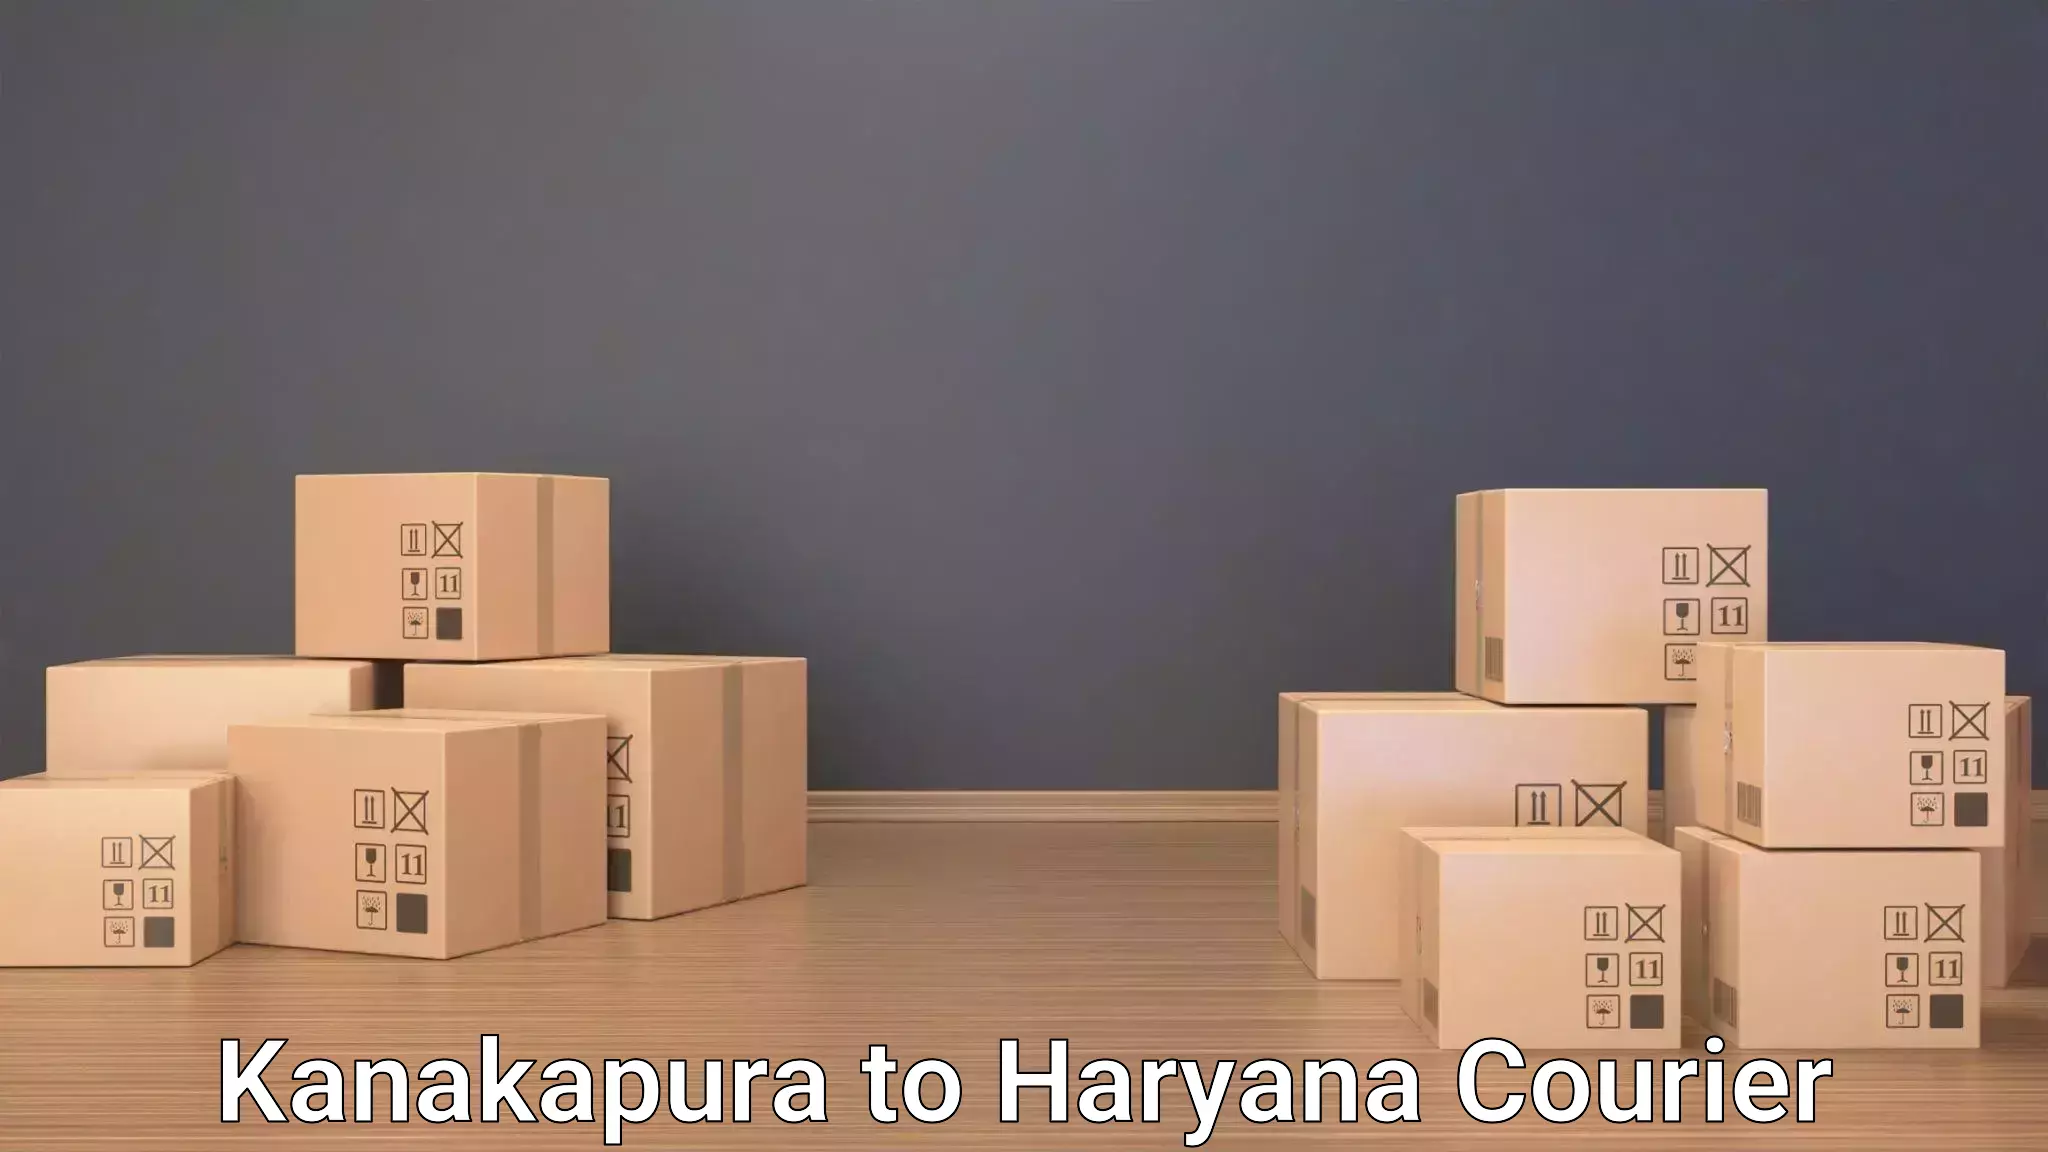 Baggage transport network Kanakapura to Haryana